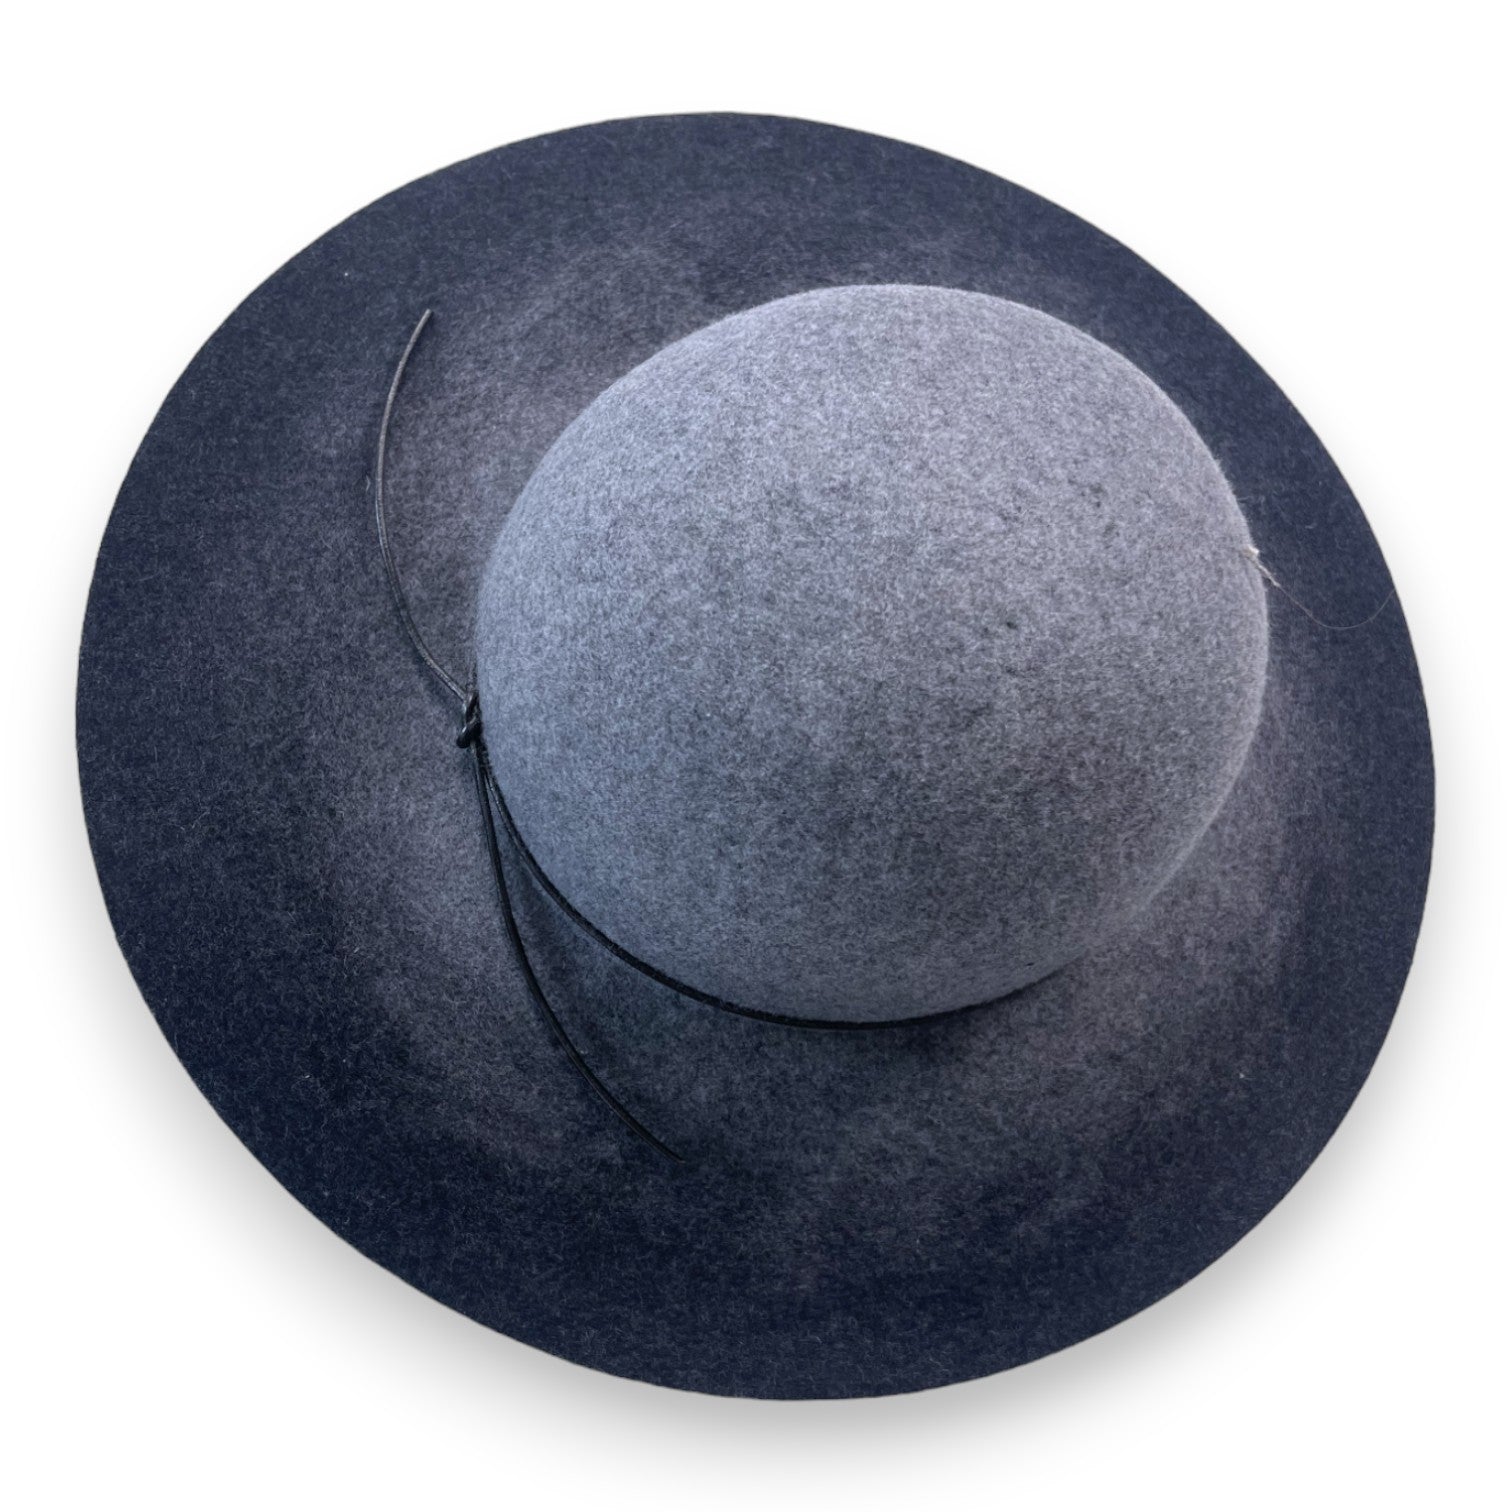 BONPOINT - Chapeau en laine gris (neuf) - T4